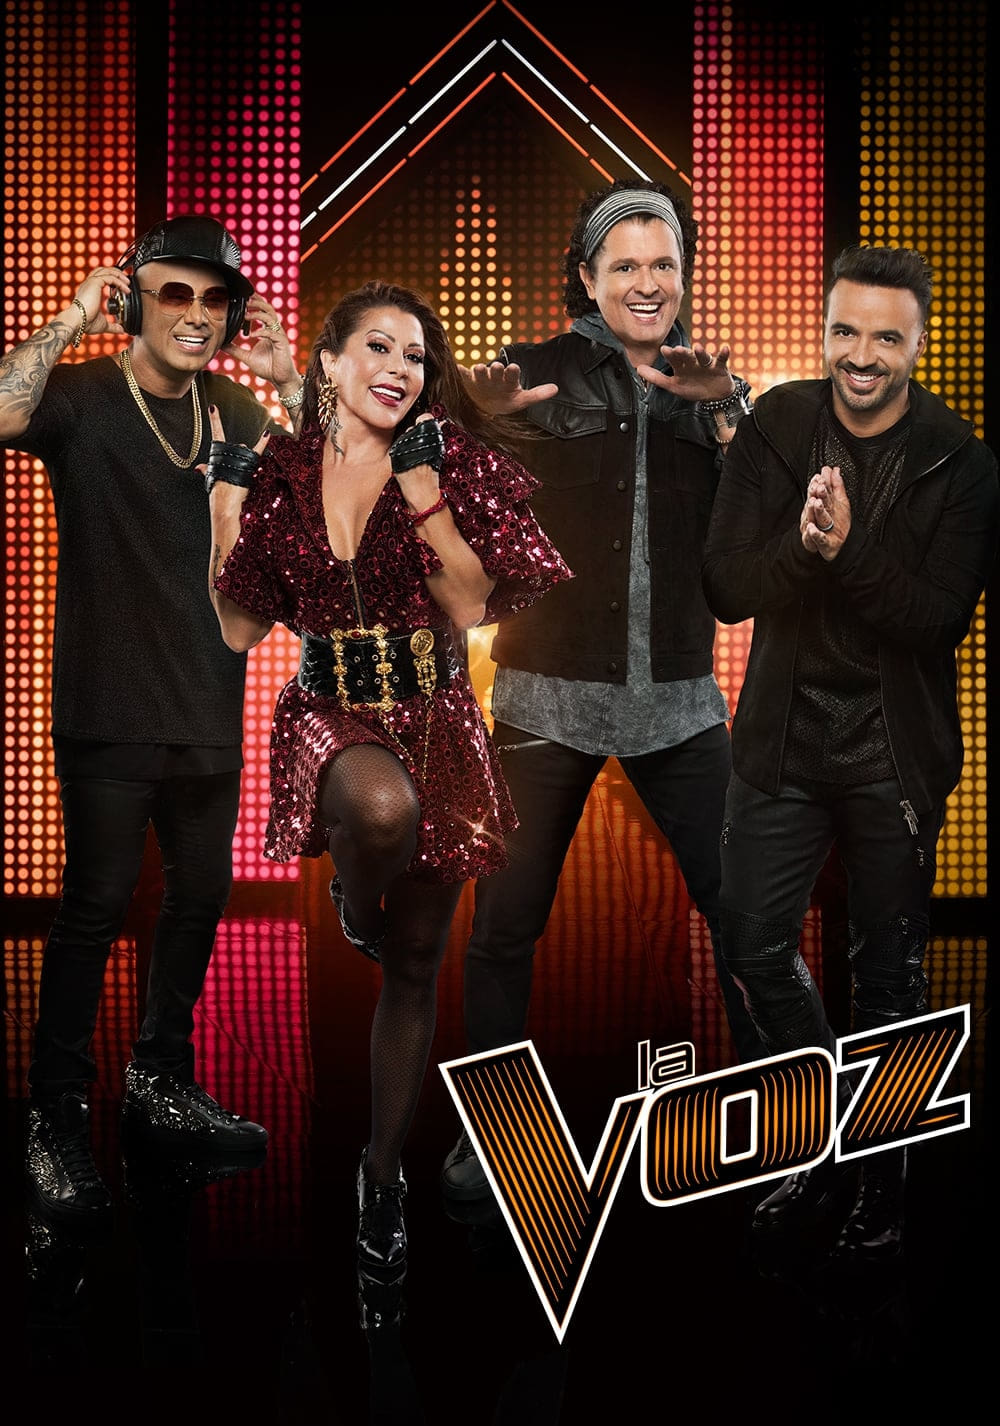 La Voz TV Shows About Singer